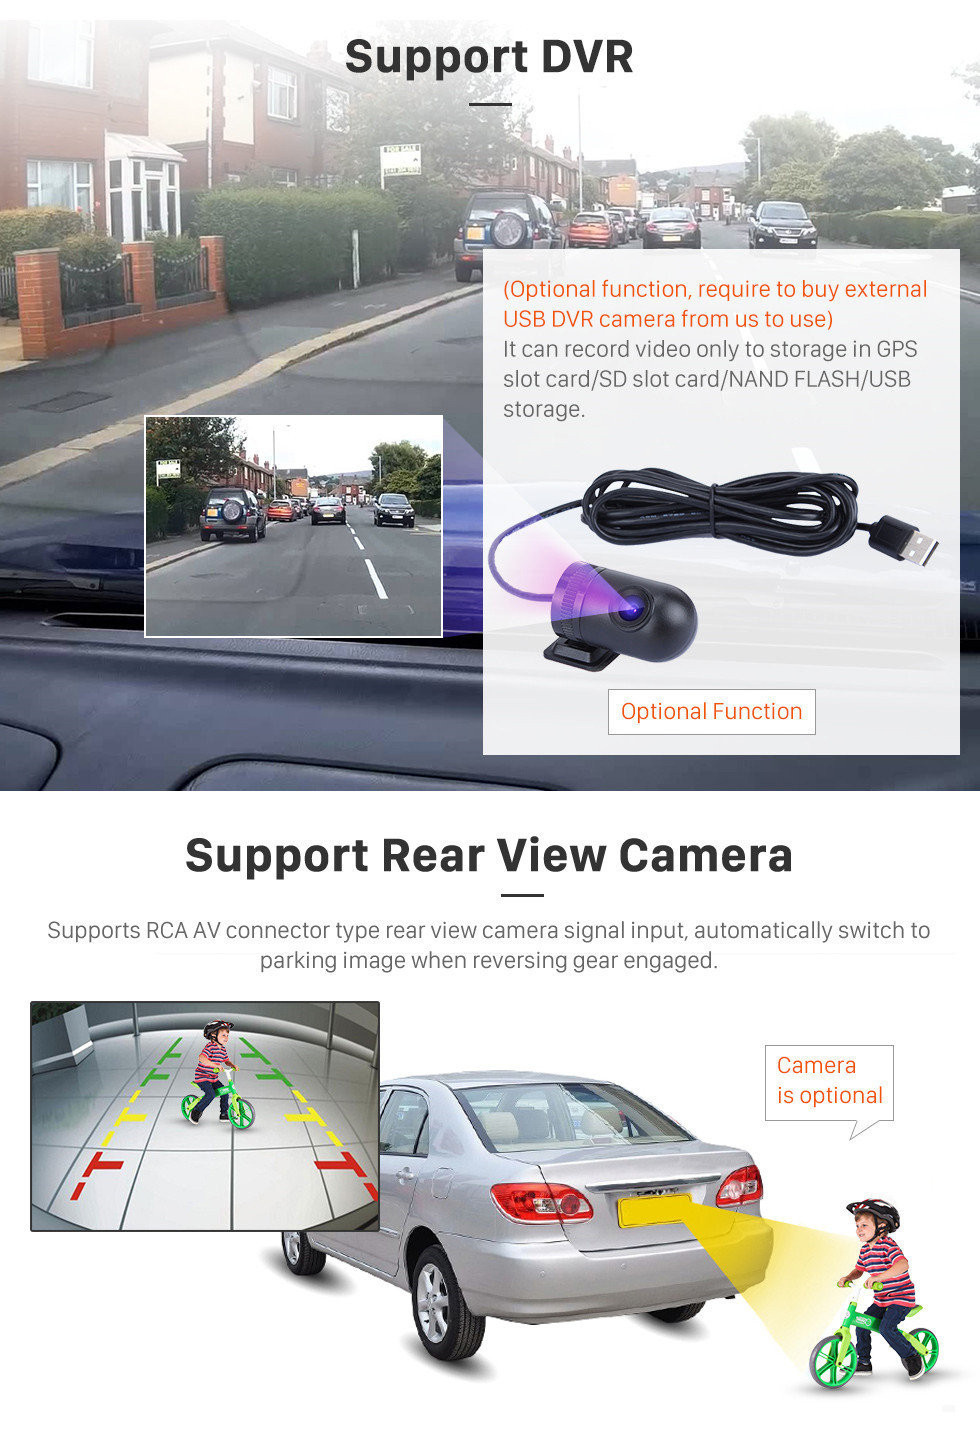 Seicane Para 2006-2012 Hyundai SANTA FE OEM Android 11.0 HD 1024 * 600 touch screen GPS sistema de navegação Rádio Bluetooth OBD2 DVR Câmera retrovisora TV 1080P Vídeo USB WIFI Controle do volante